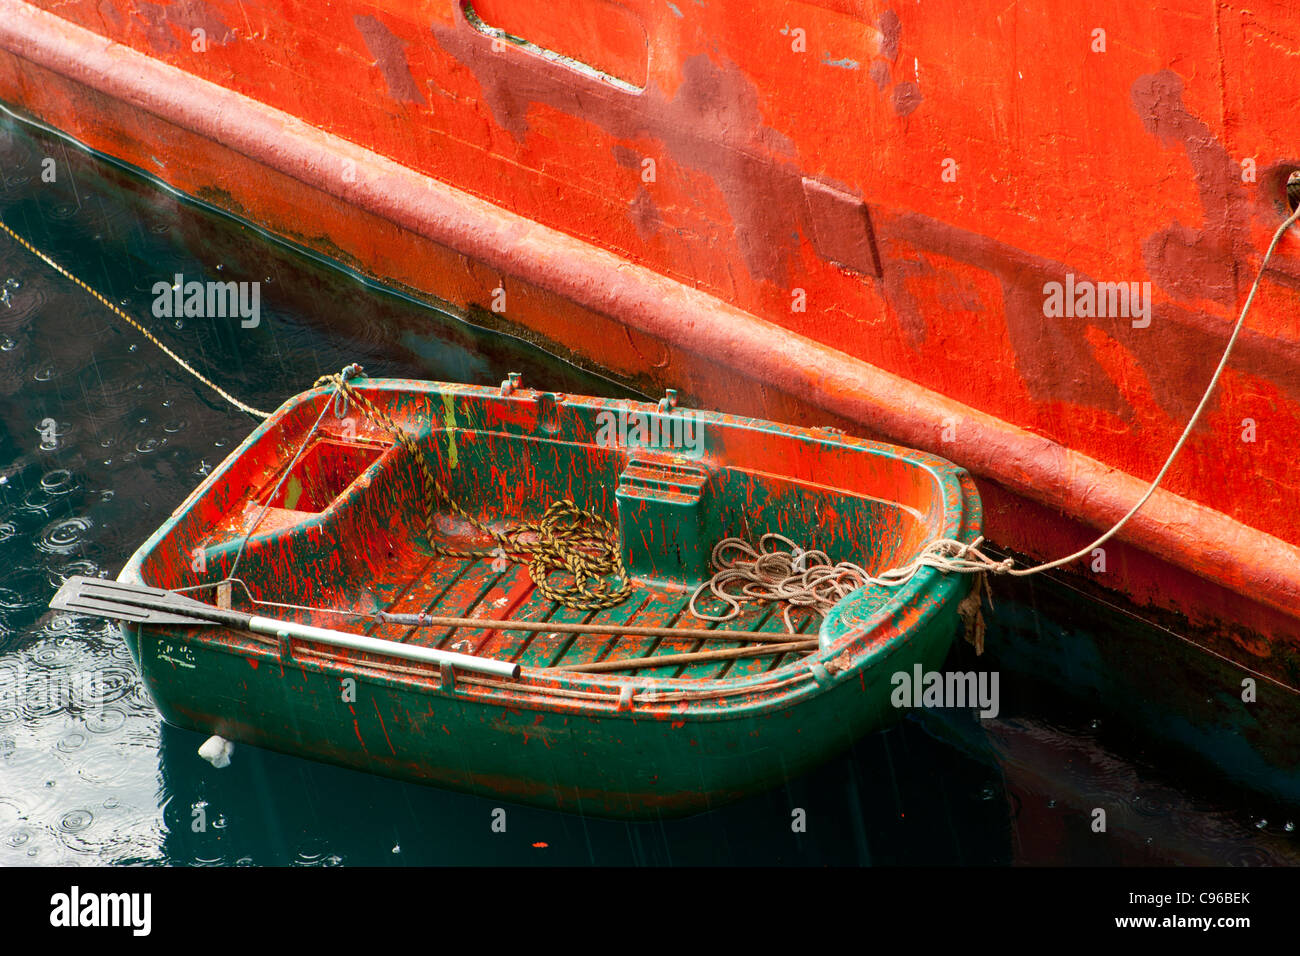 Petit bateau vert tendre / couvert de peinture orange et intégré à un grand navire peint en orange, sous la pluie, Banque D'Images